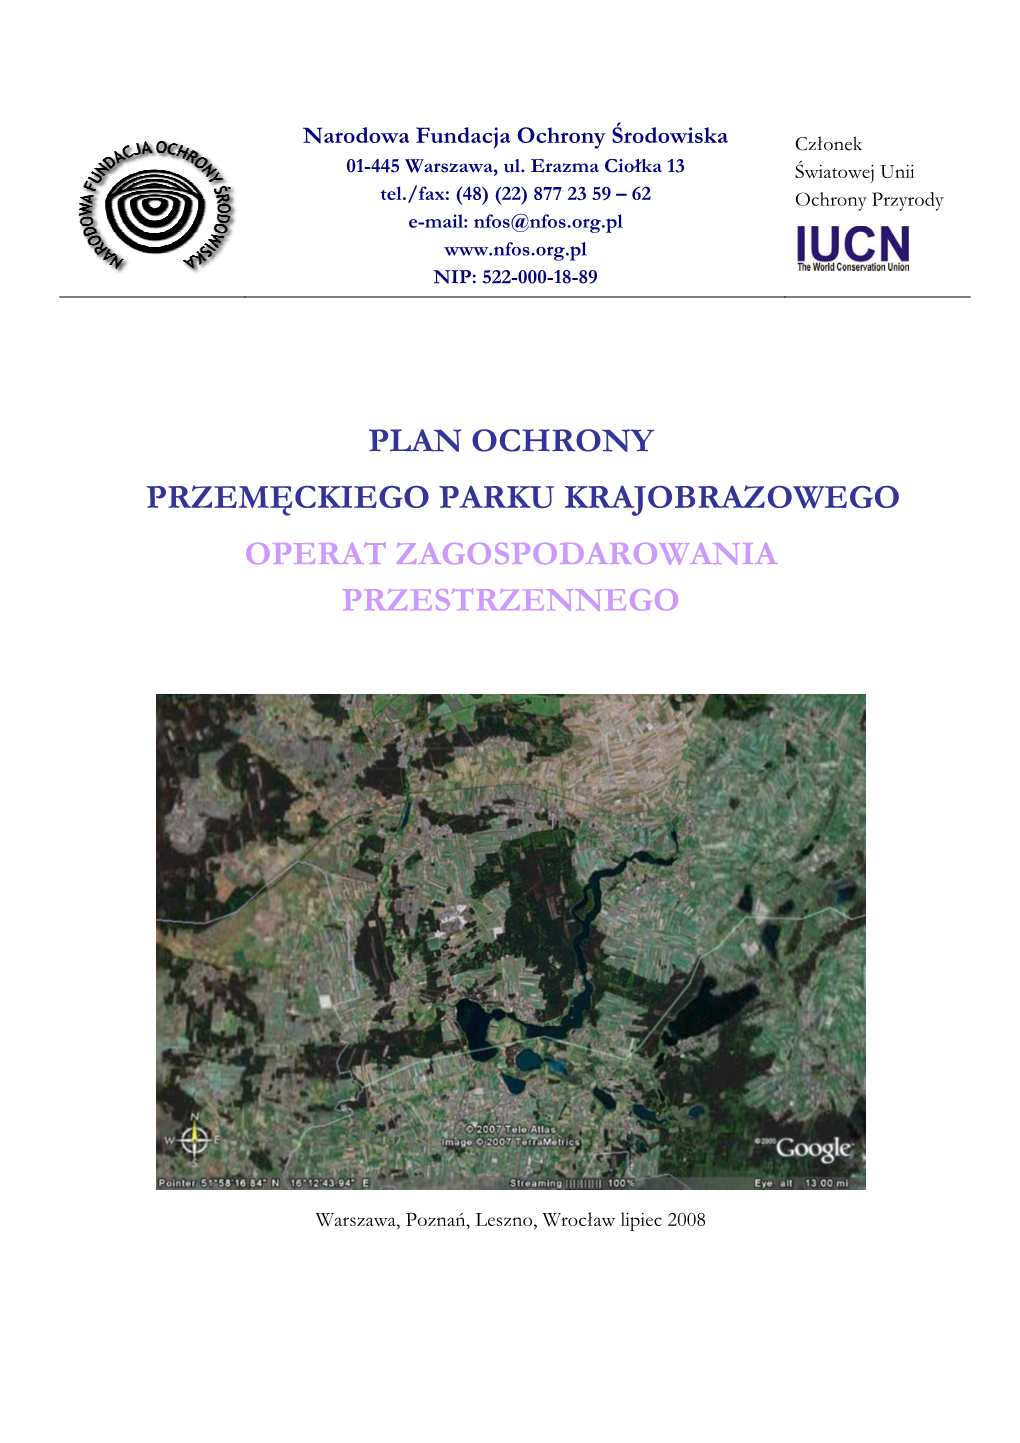 Plan Ochrony Przemęckiego Parku Krajobrazowego Operat Zagospodarowania Przestrzennego